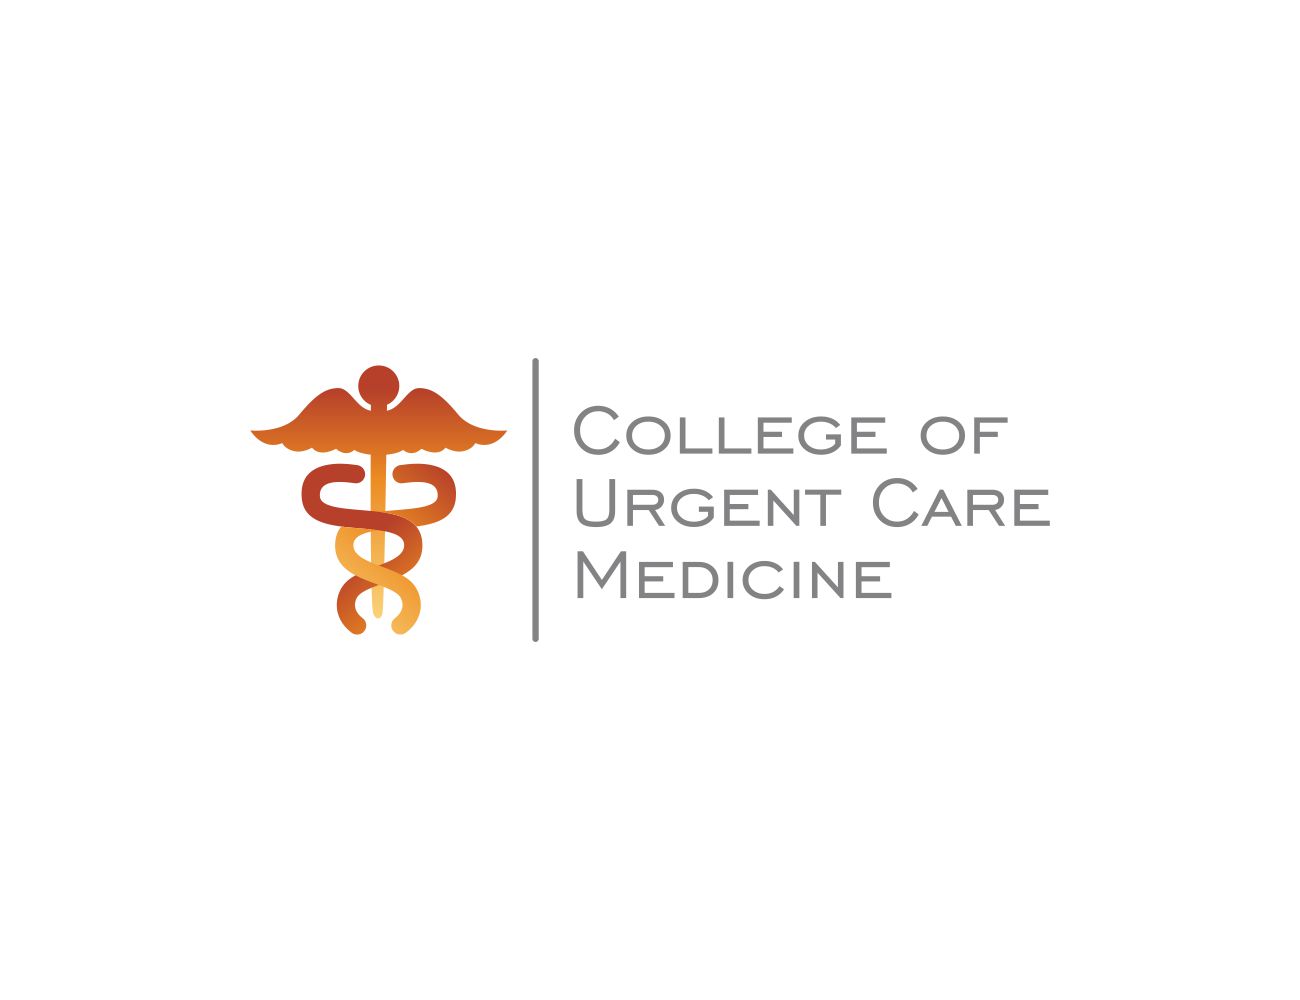 College of Urgent Care Medicine